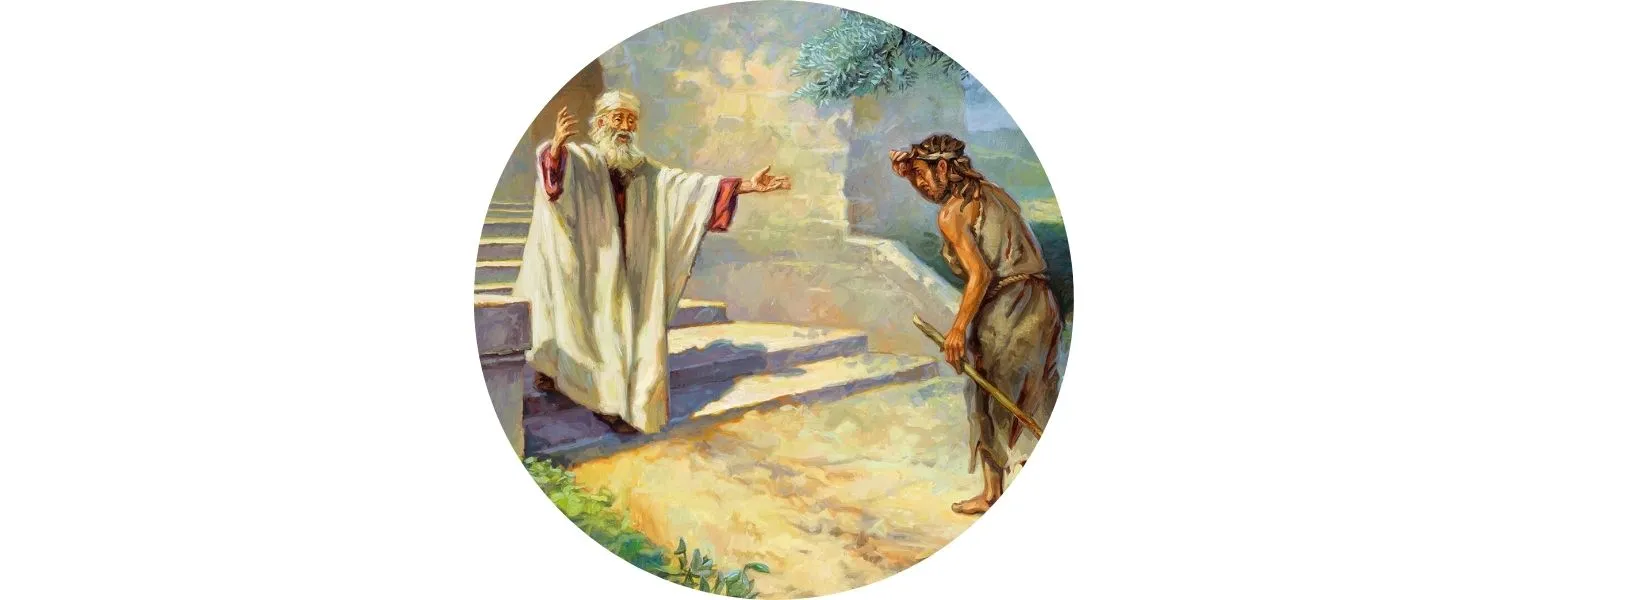 História infantil - Histórias da Bíblia - A Parábola do Filho Pródigo